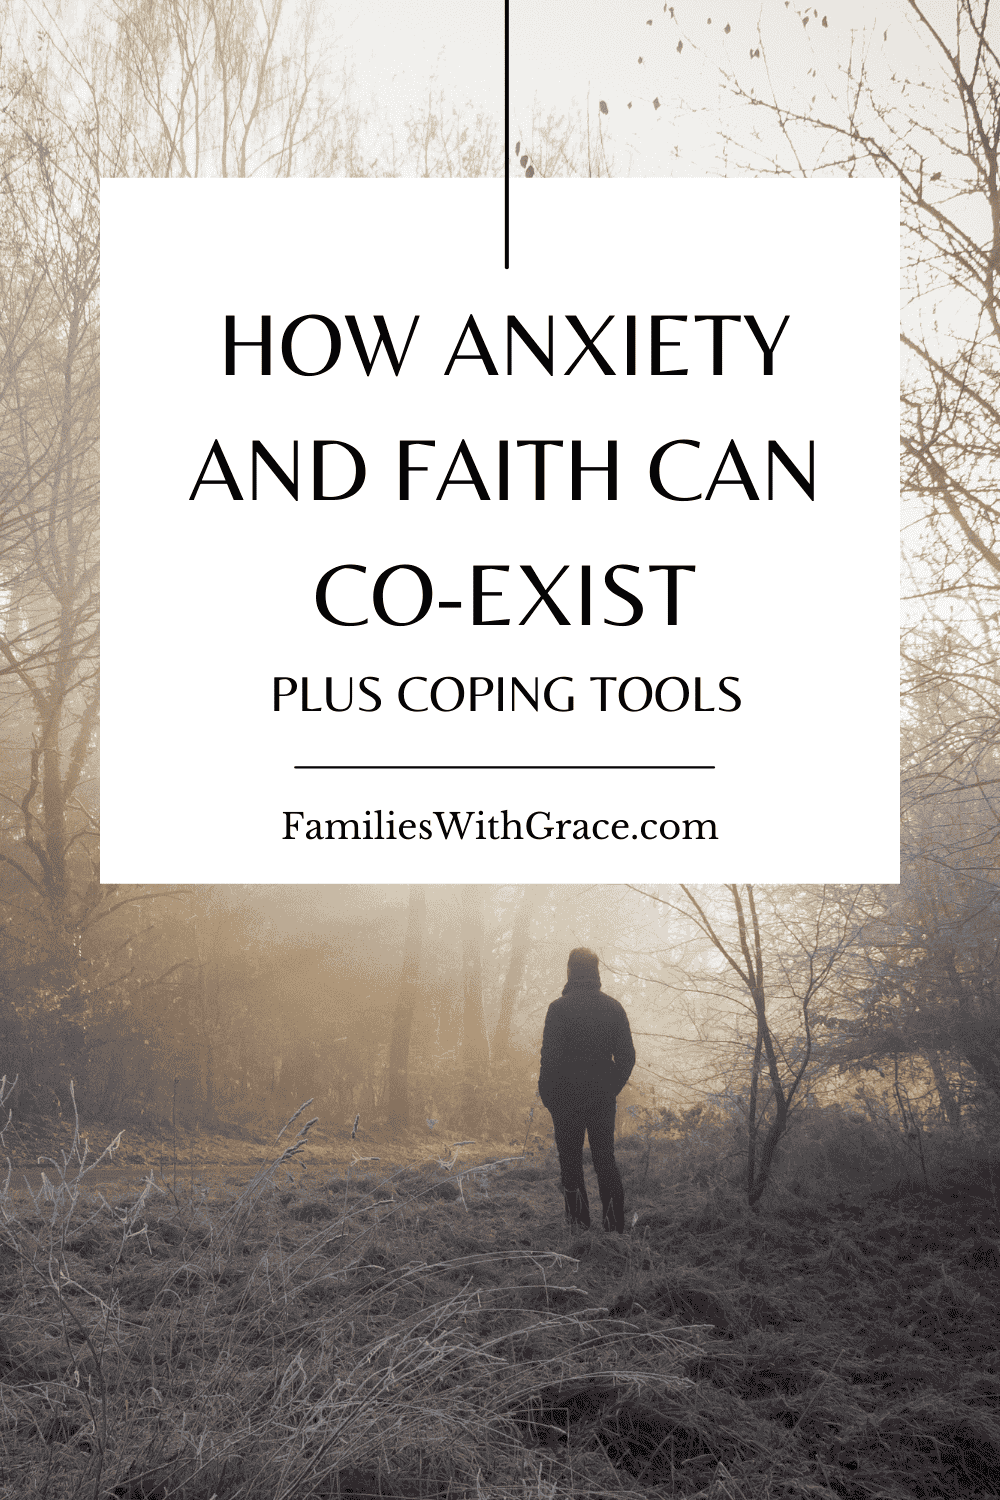 How anxiety and faith can co-exist